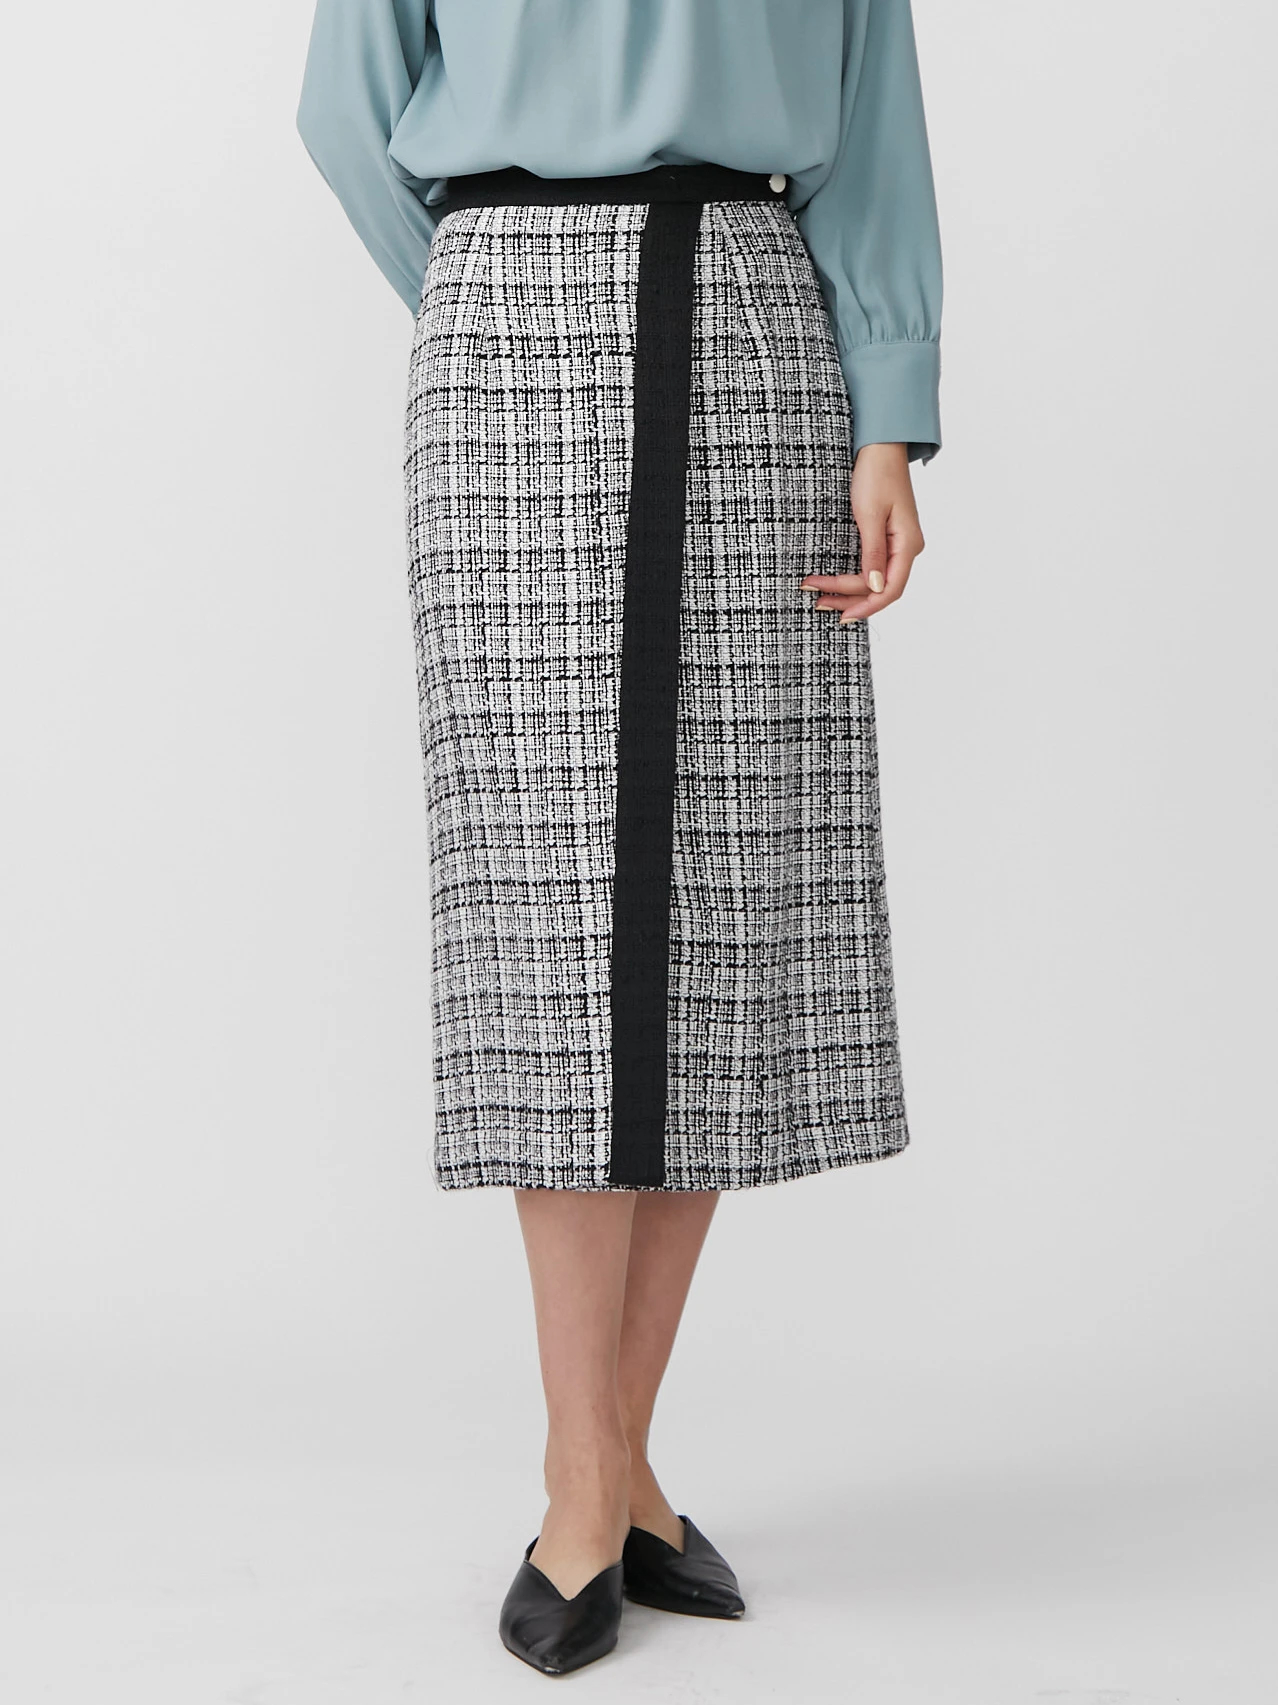 ツイードアシメAラインスカート | レディースファッション通販のTONAL ...